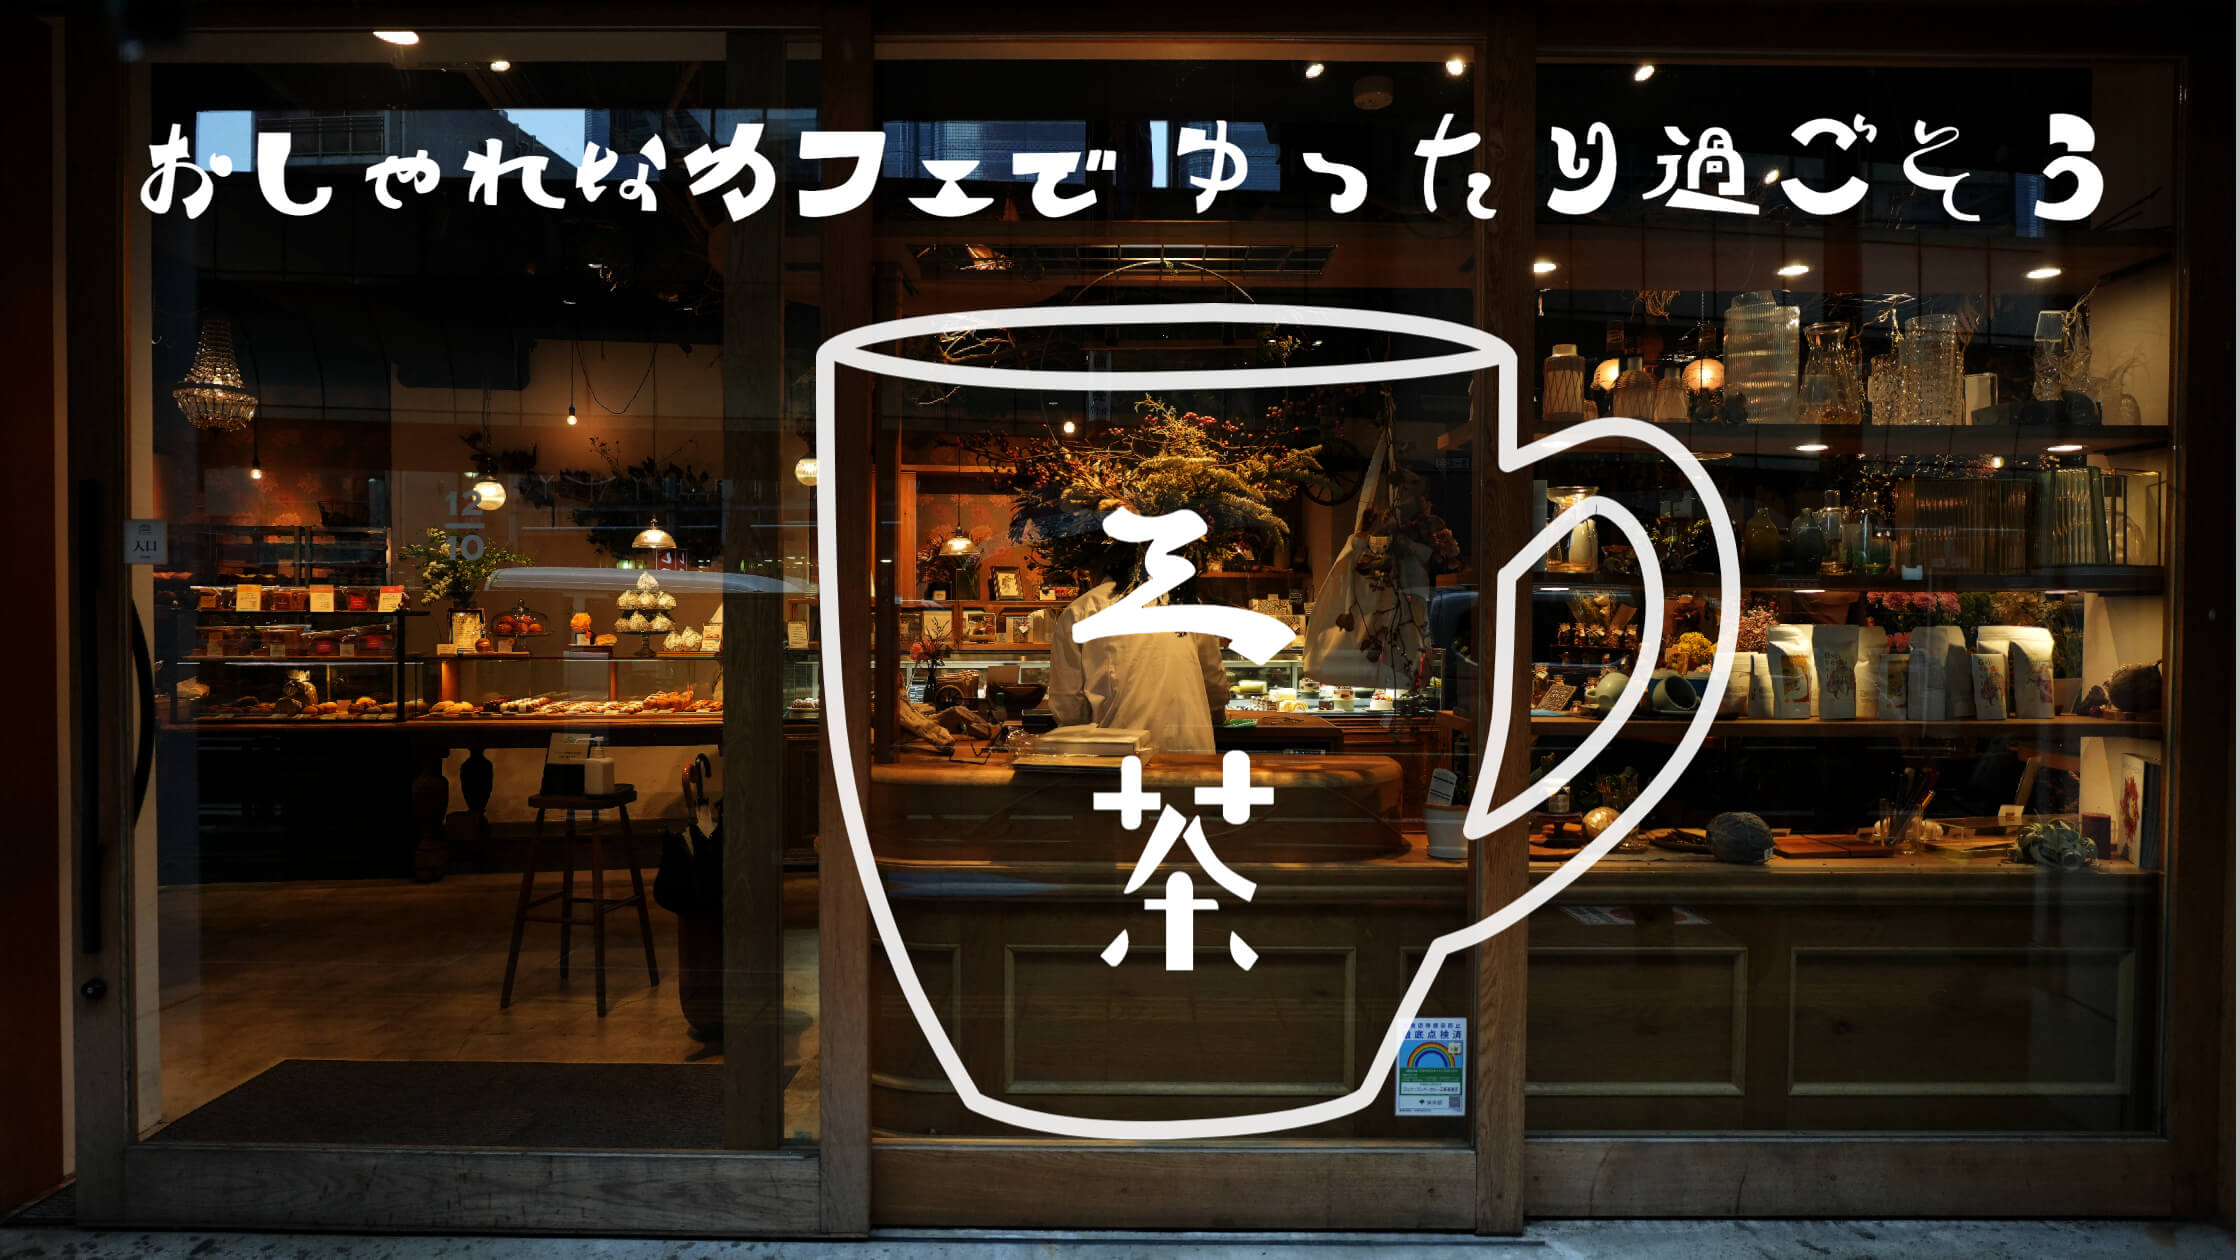 この画像には「三軒茶屋おしゃれなカフェでゆったり過ごそう」と書かれています。